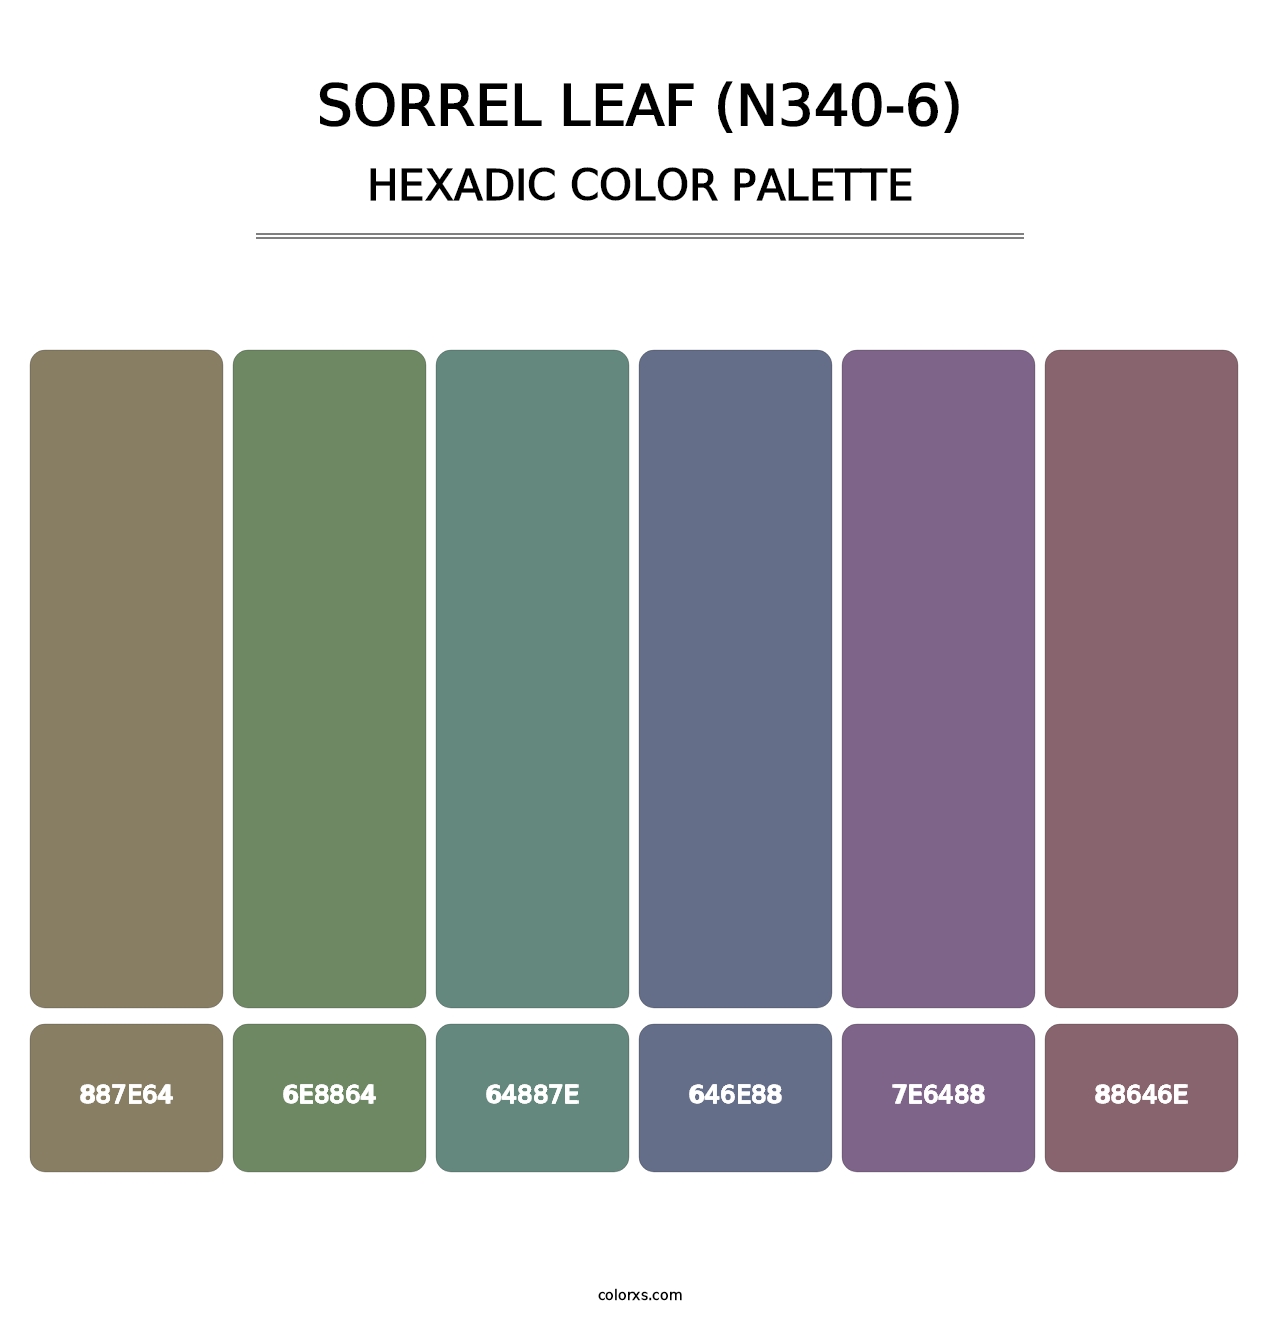 Sorrel Leaf (N340-6) - Hexadic Color Palette